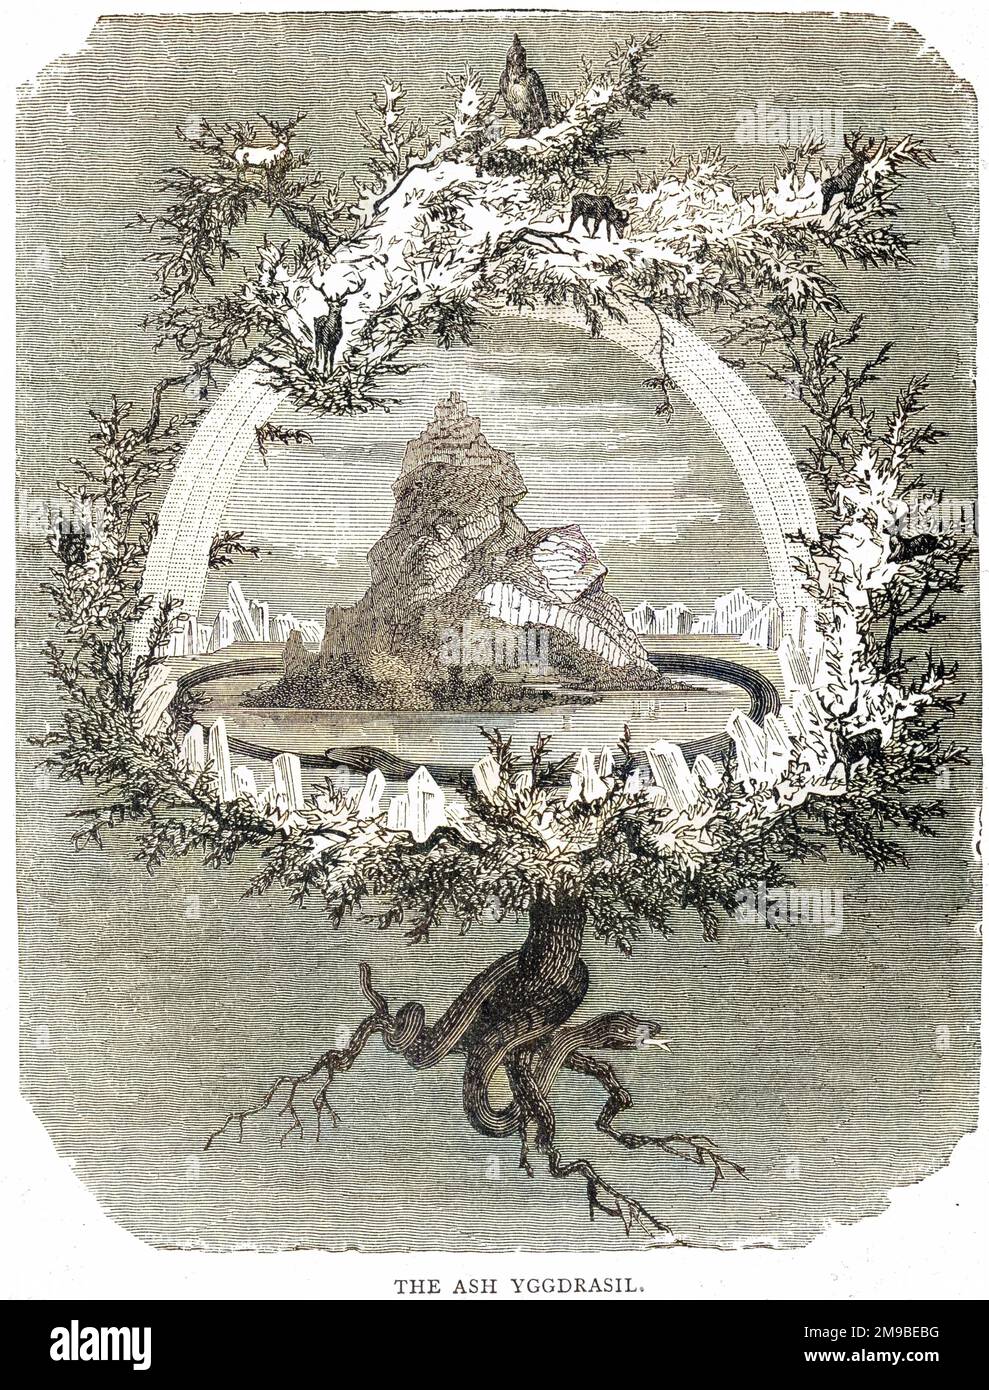 Yggrasil (Yggrasil), la cenere sacra, l'albero della vita, l'albero mondano della mitologia norrena, i cui rami sovrastano l'Universo. Foto Stock